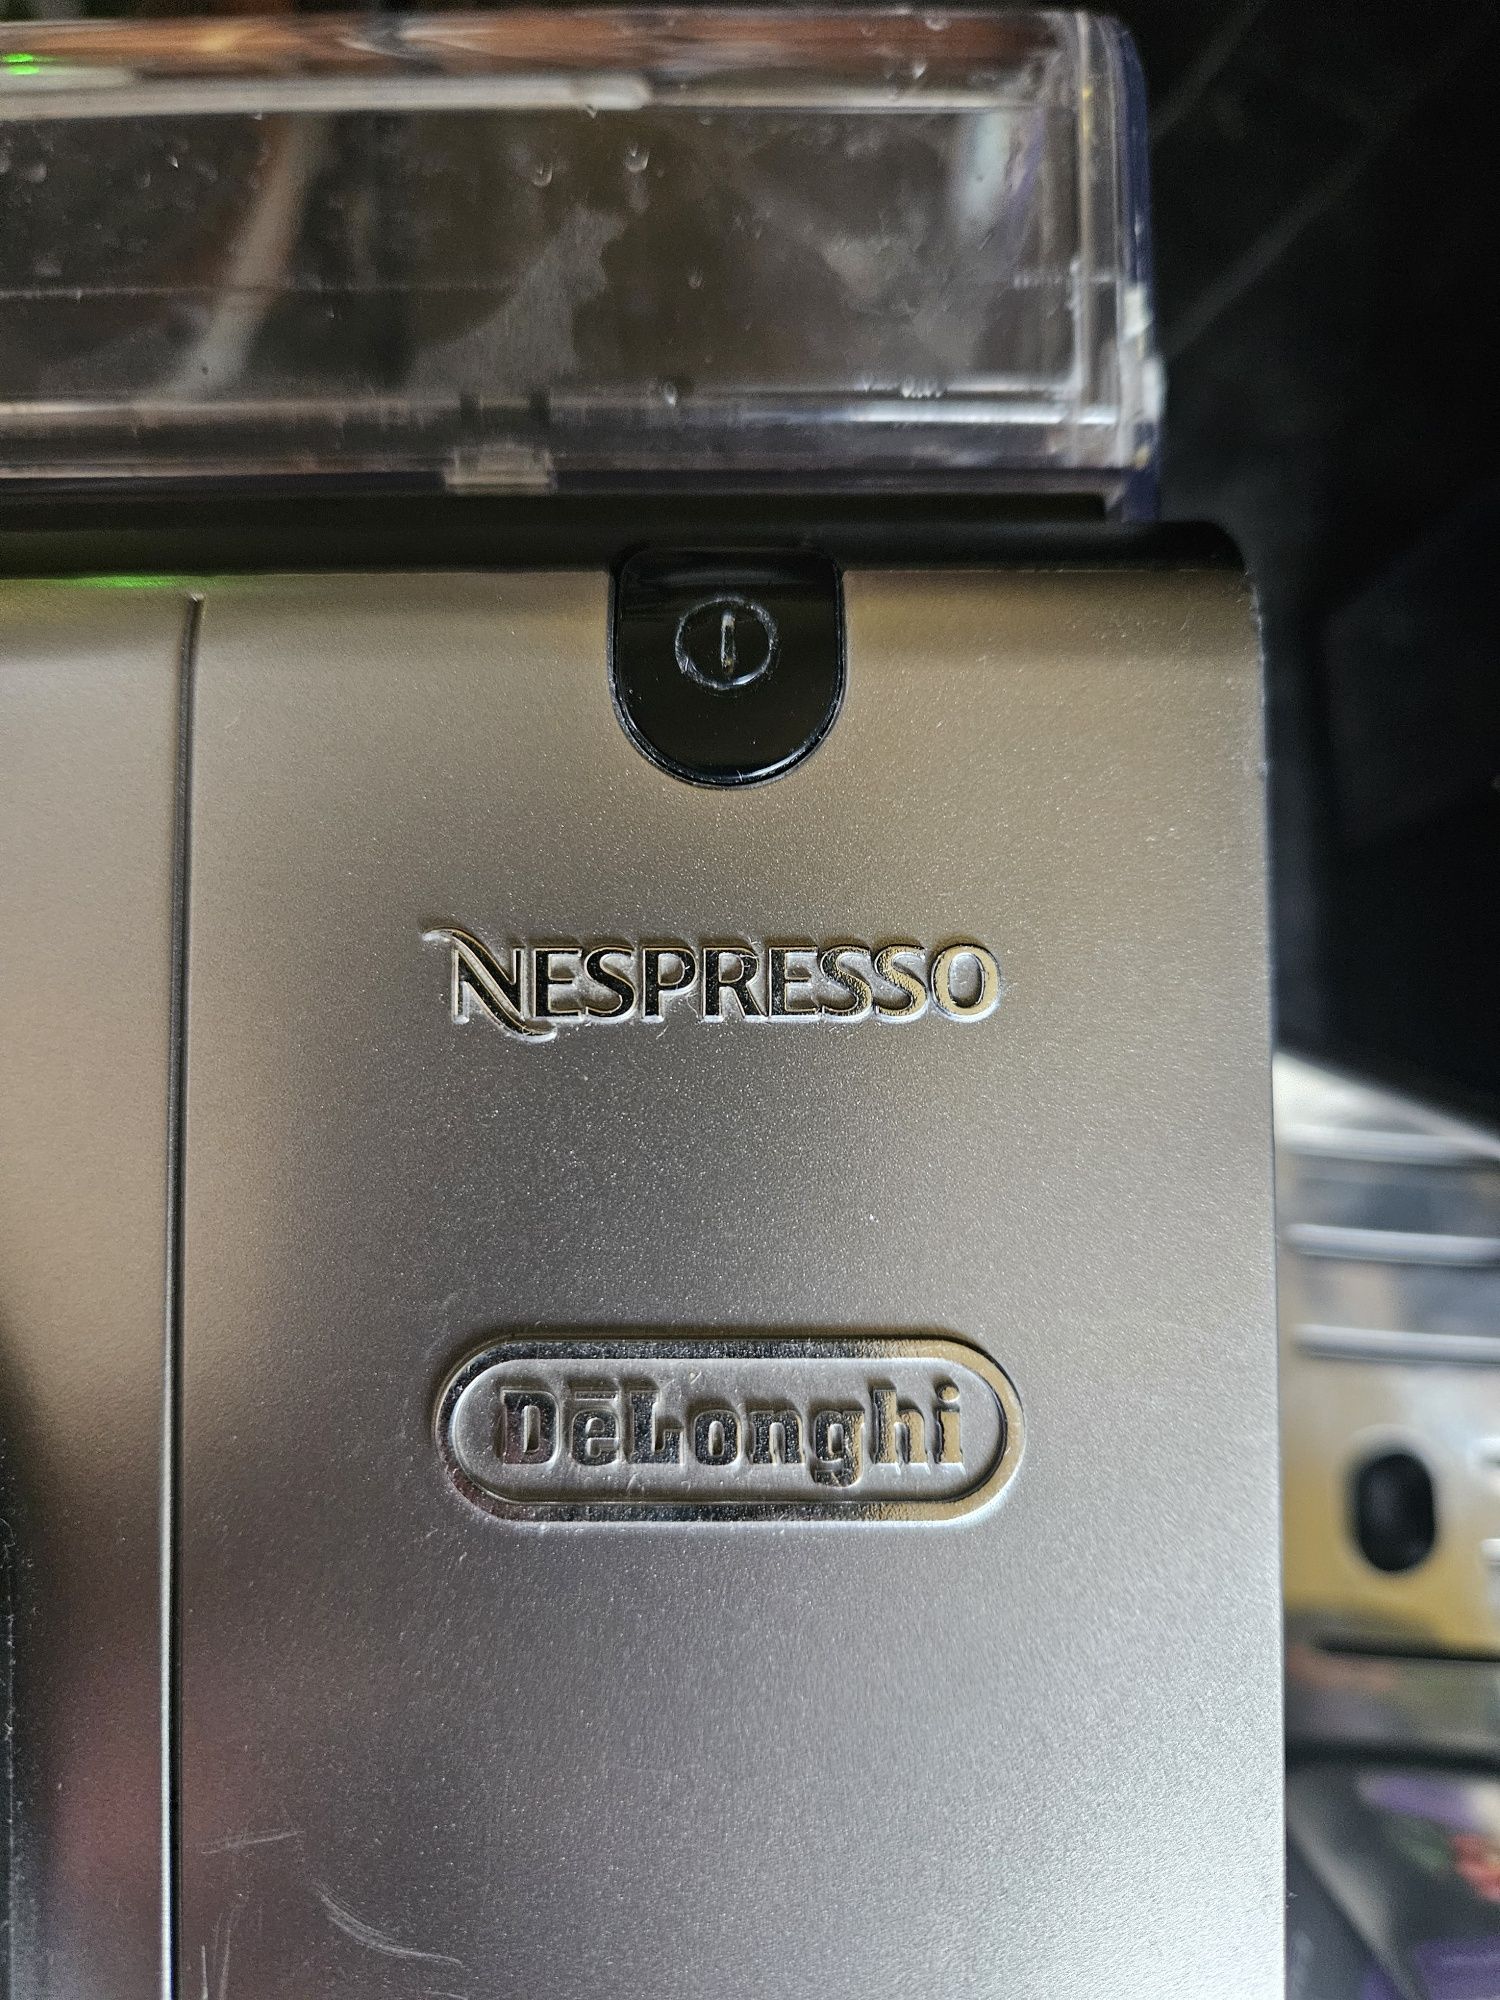 Ekspres Nespresso delonghi - kapsułkowy